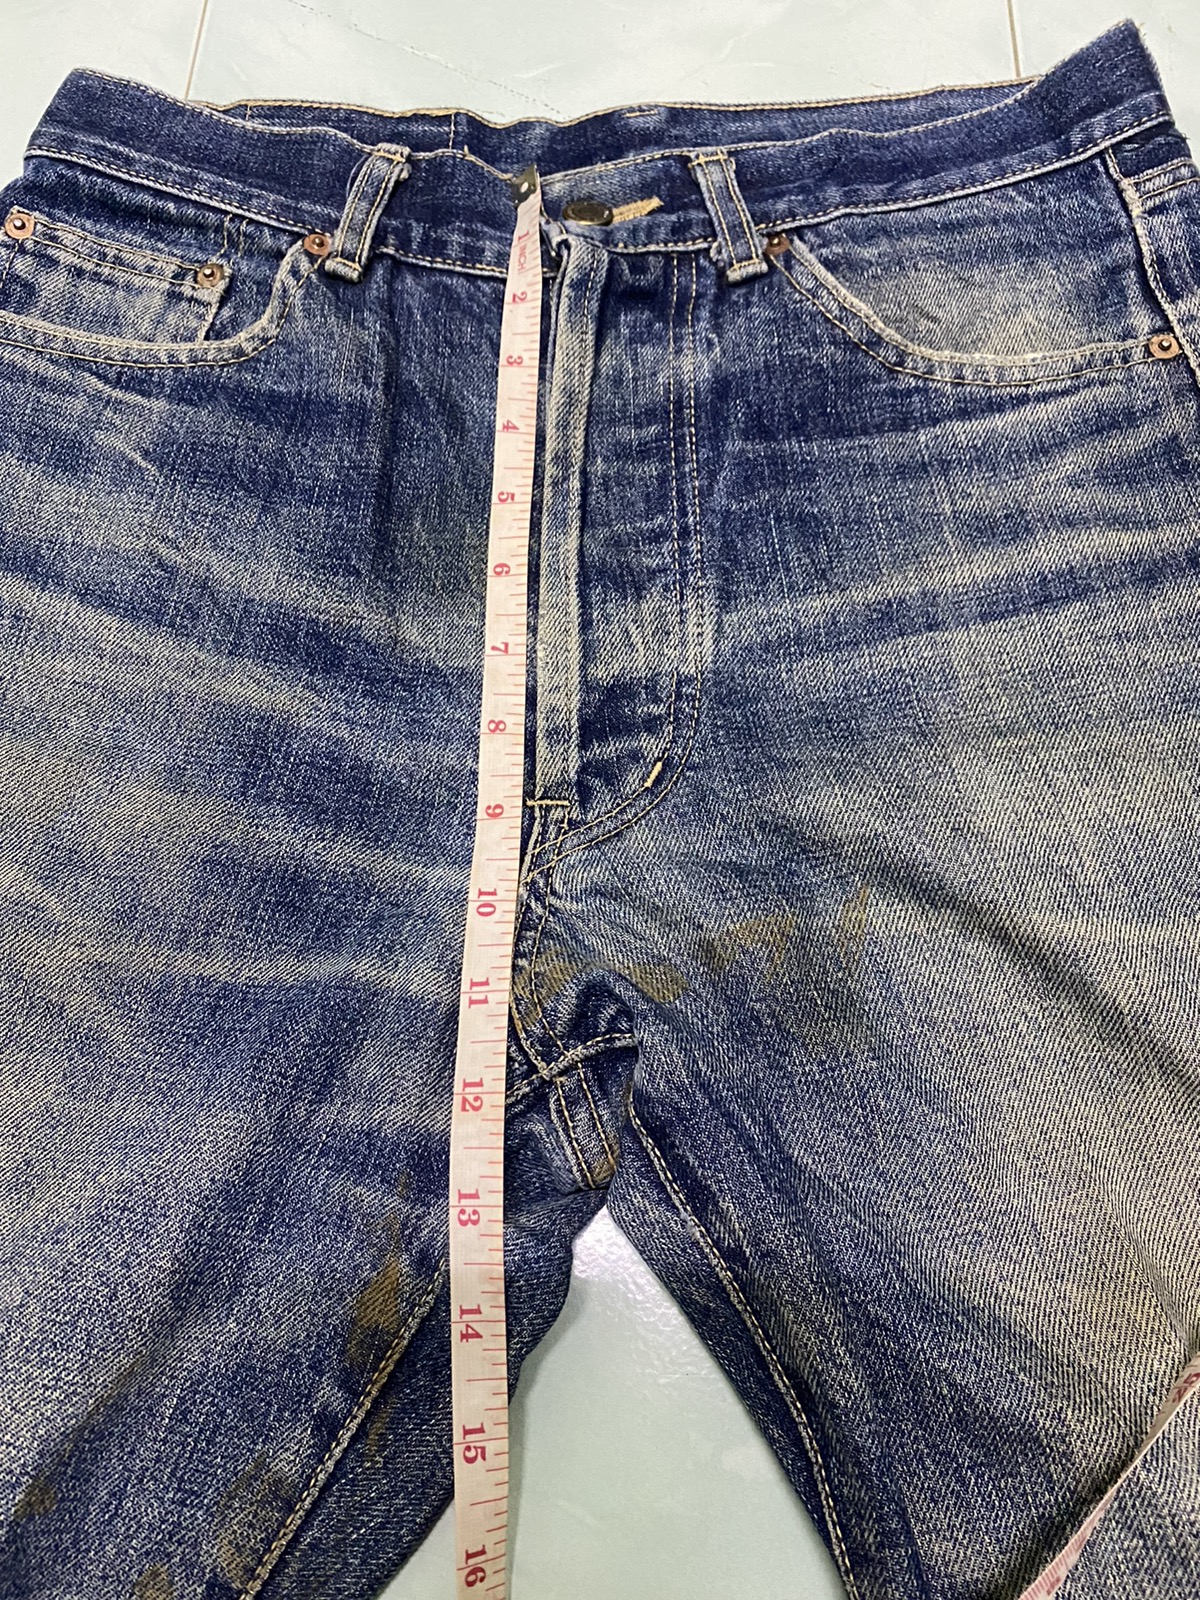 Evisu Selvedge Denim Jeans - 5